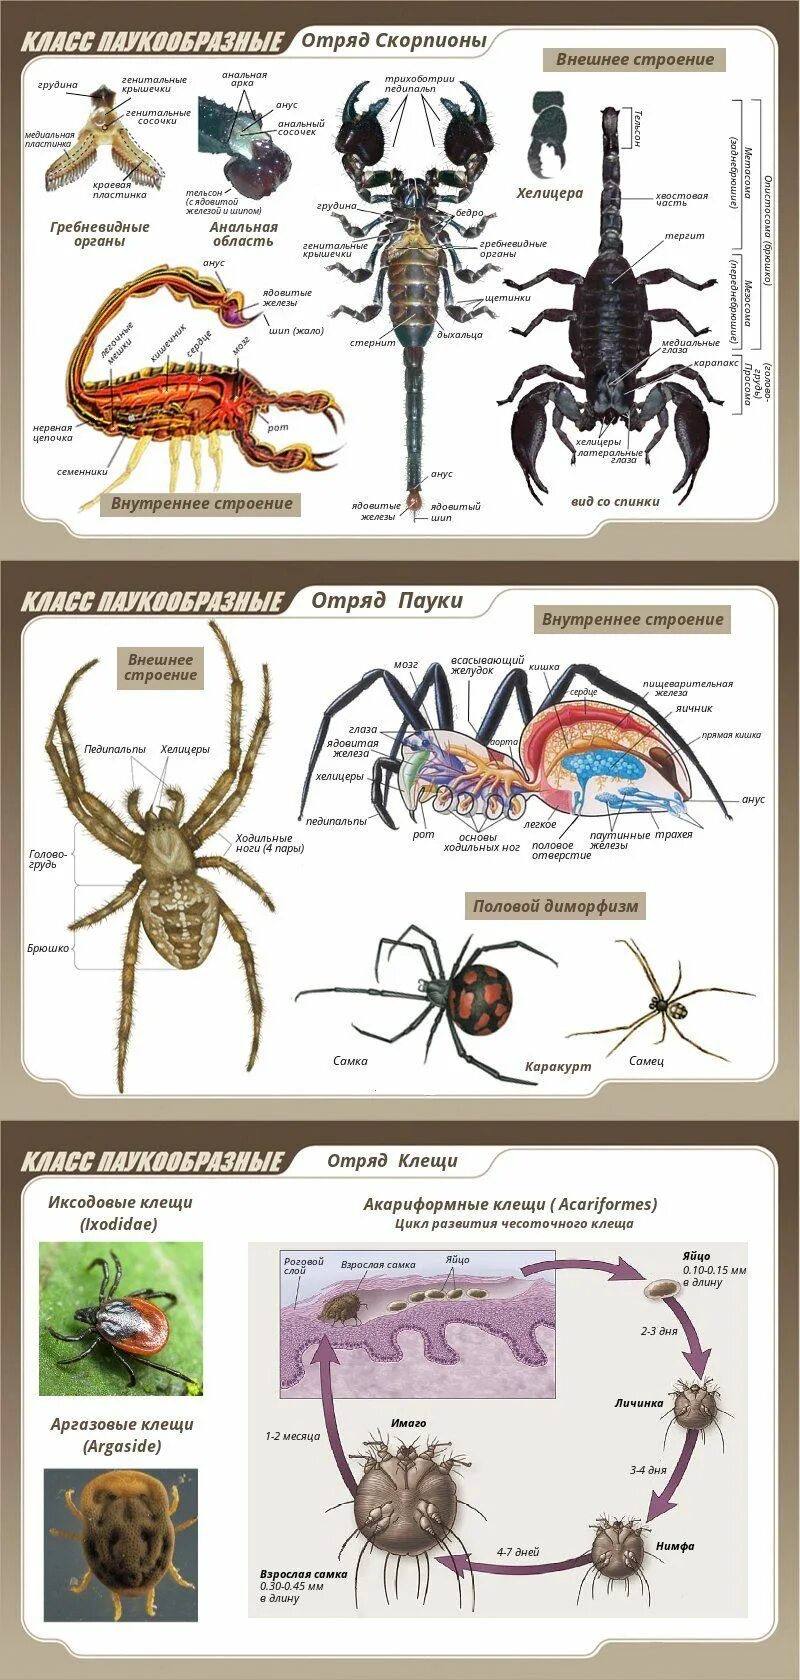 Установи соответствие между паукообразными и насекомыми. Членистоногие ракообразные паукообразные насекомые. Тип Членистоногие класс паукообразные класс. Тип Членистоногие представители. Представители членистоногих паукообразных.